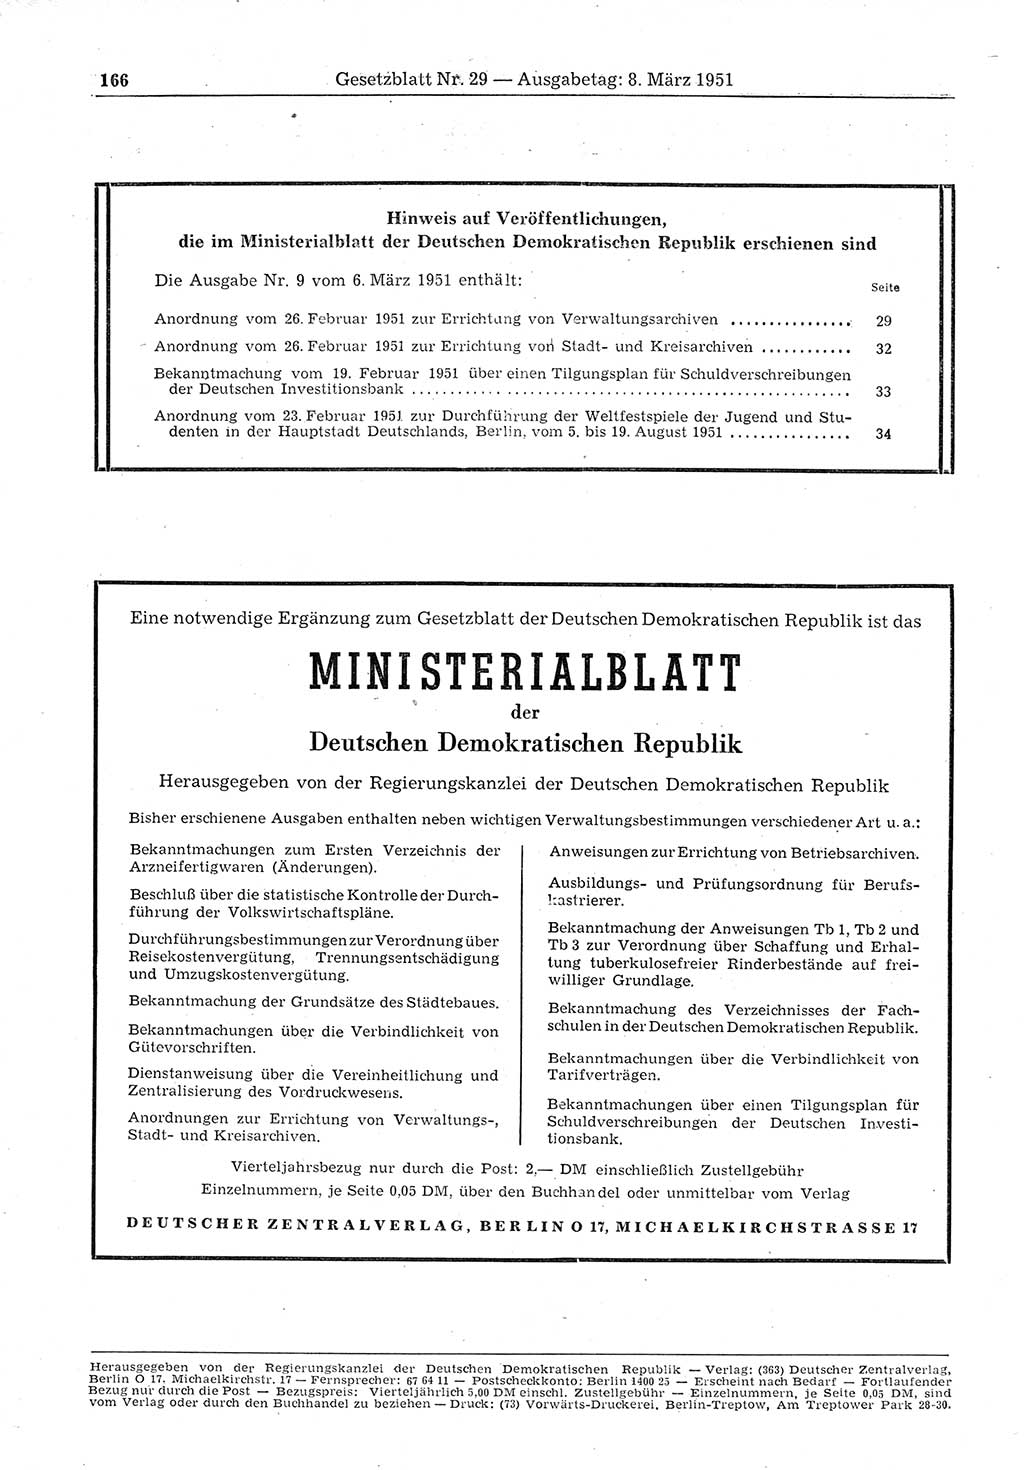 Gesetzblatt (GBl.) der Deutschen Demokratischen Republik (DDR) 1951, Seite 166 (GBl. DDR 1951, S. 166)